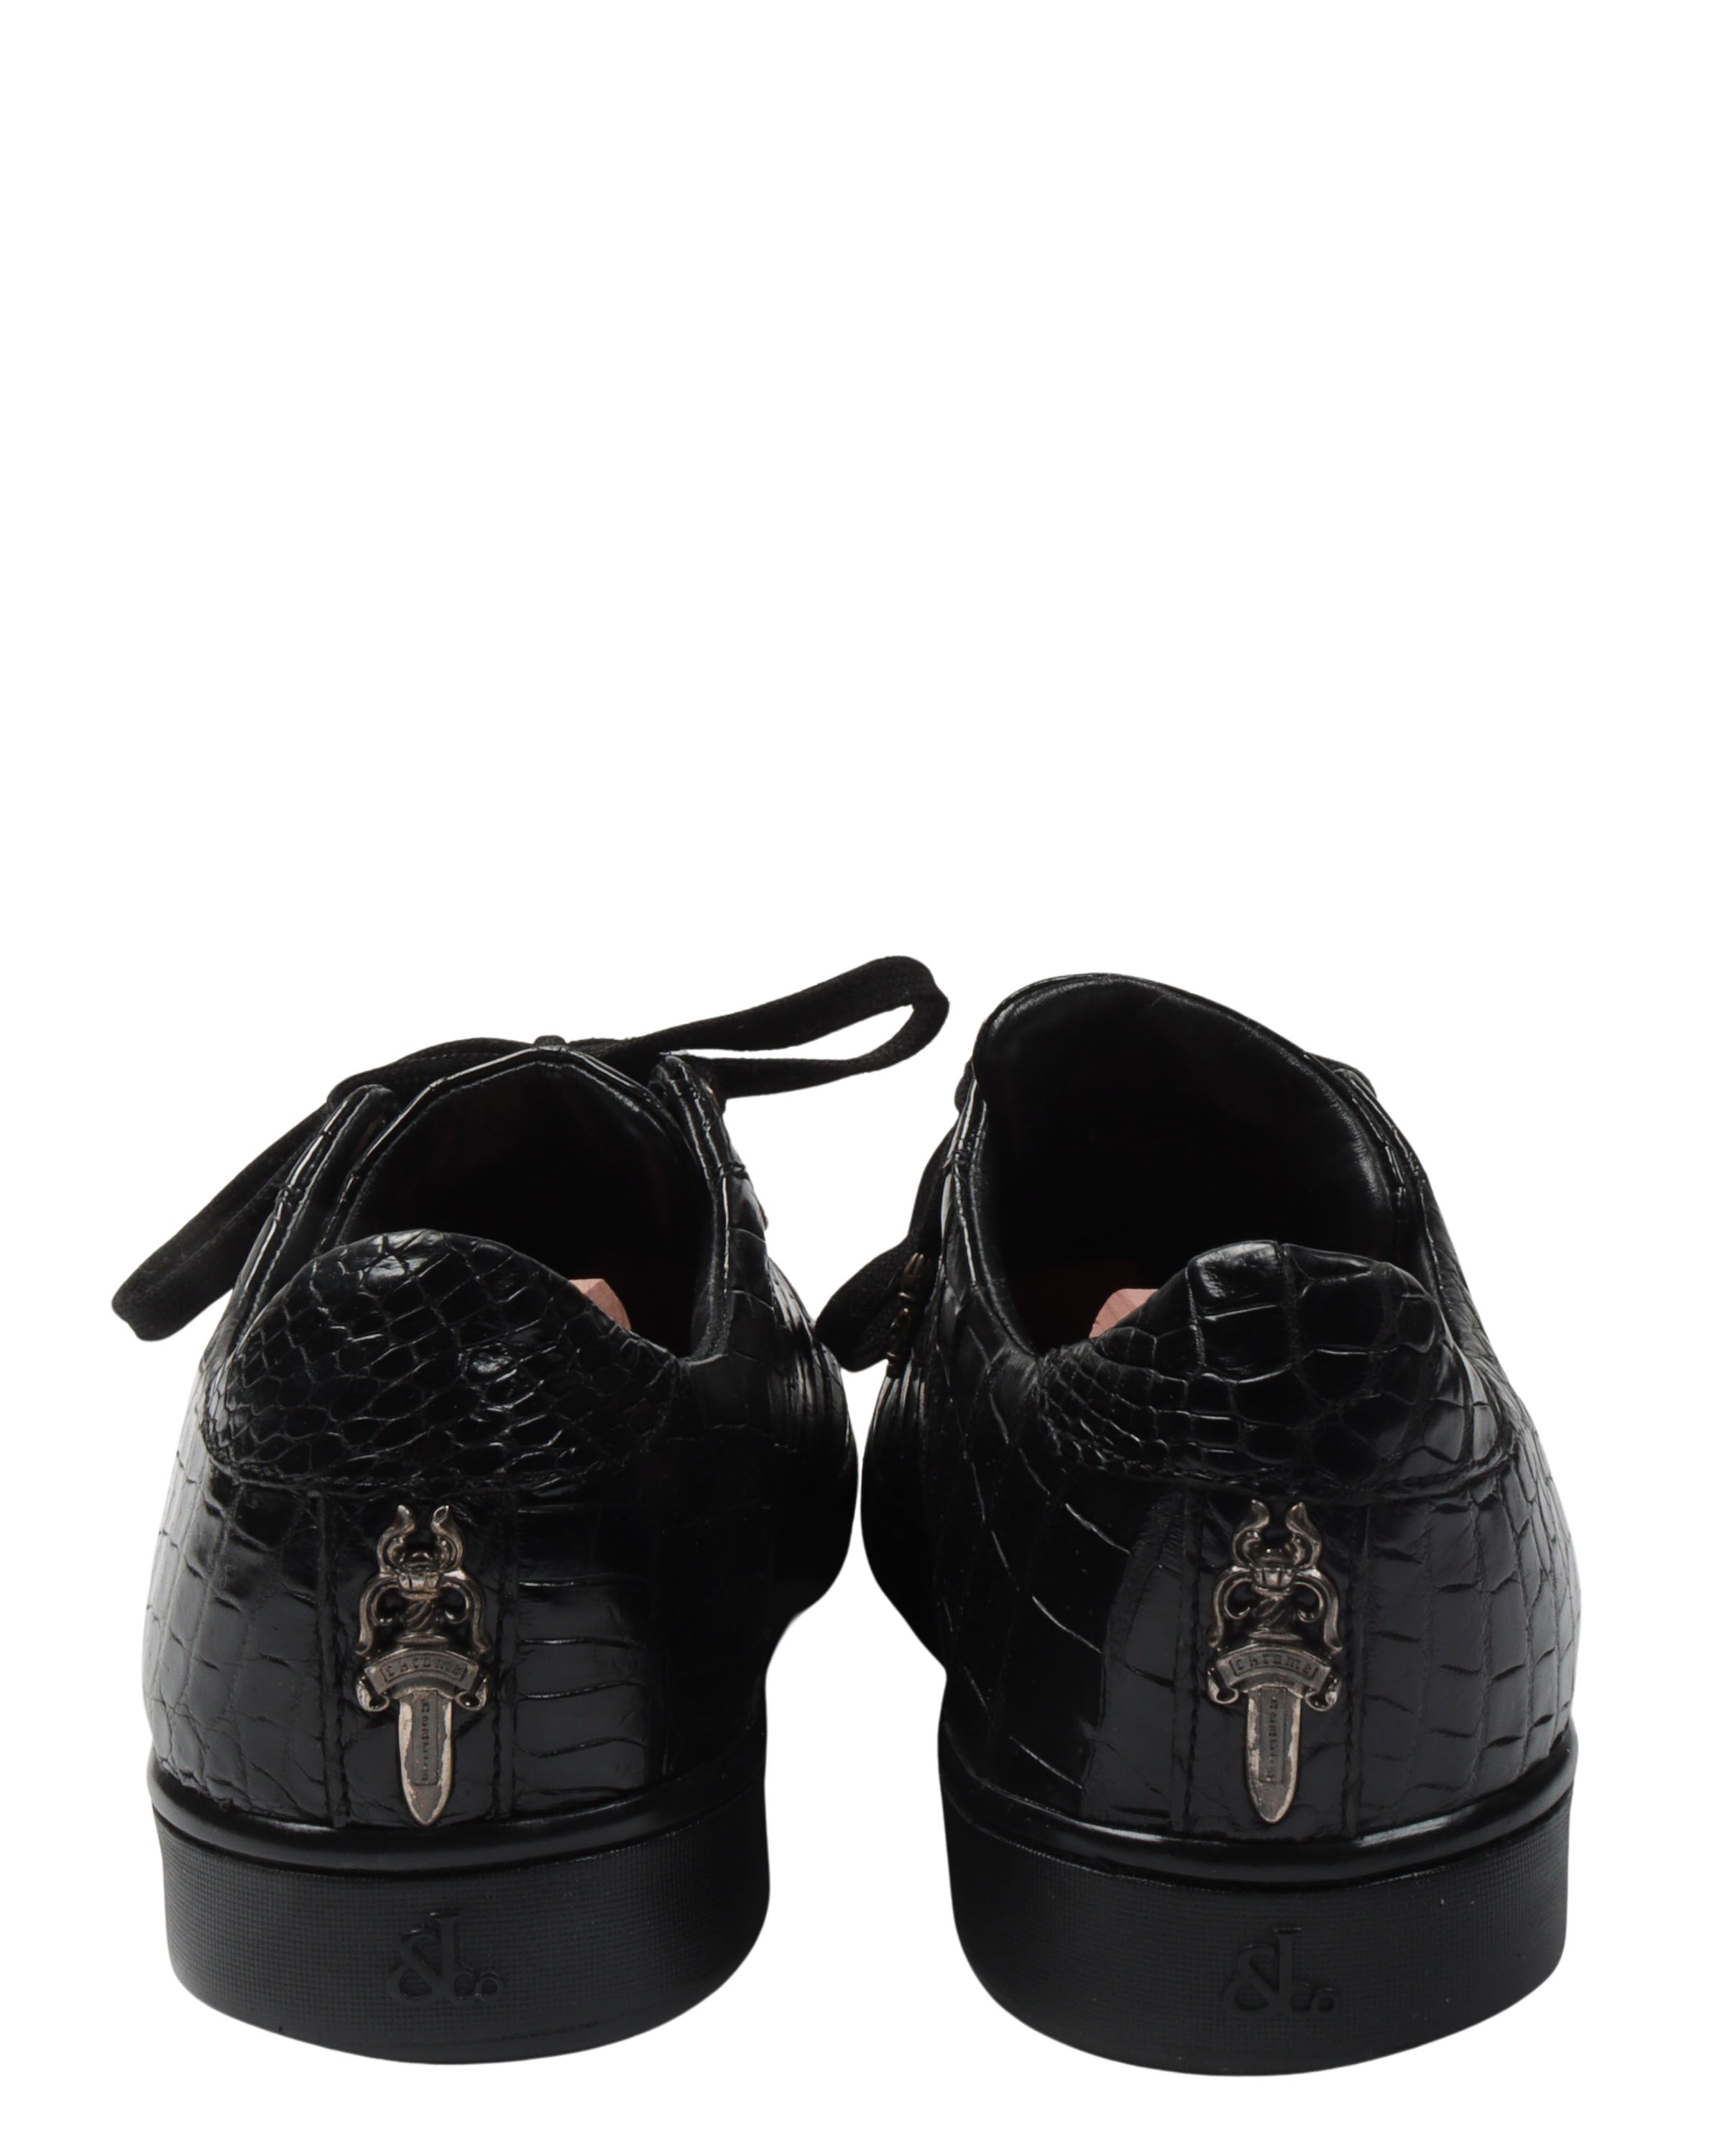 Jacob & Co. Crocodile Leather Sneakers